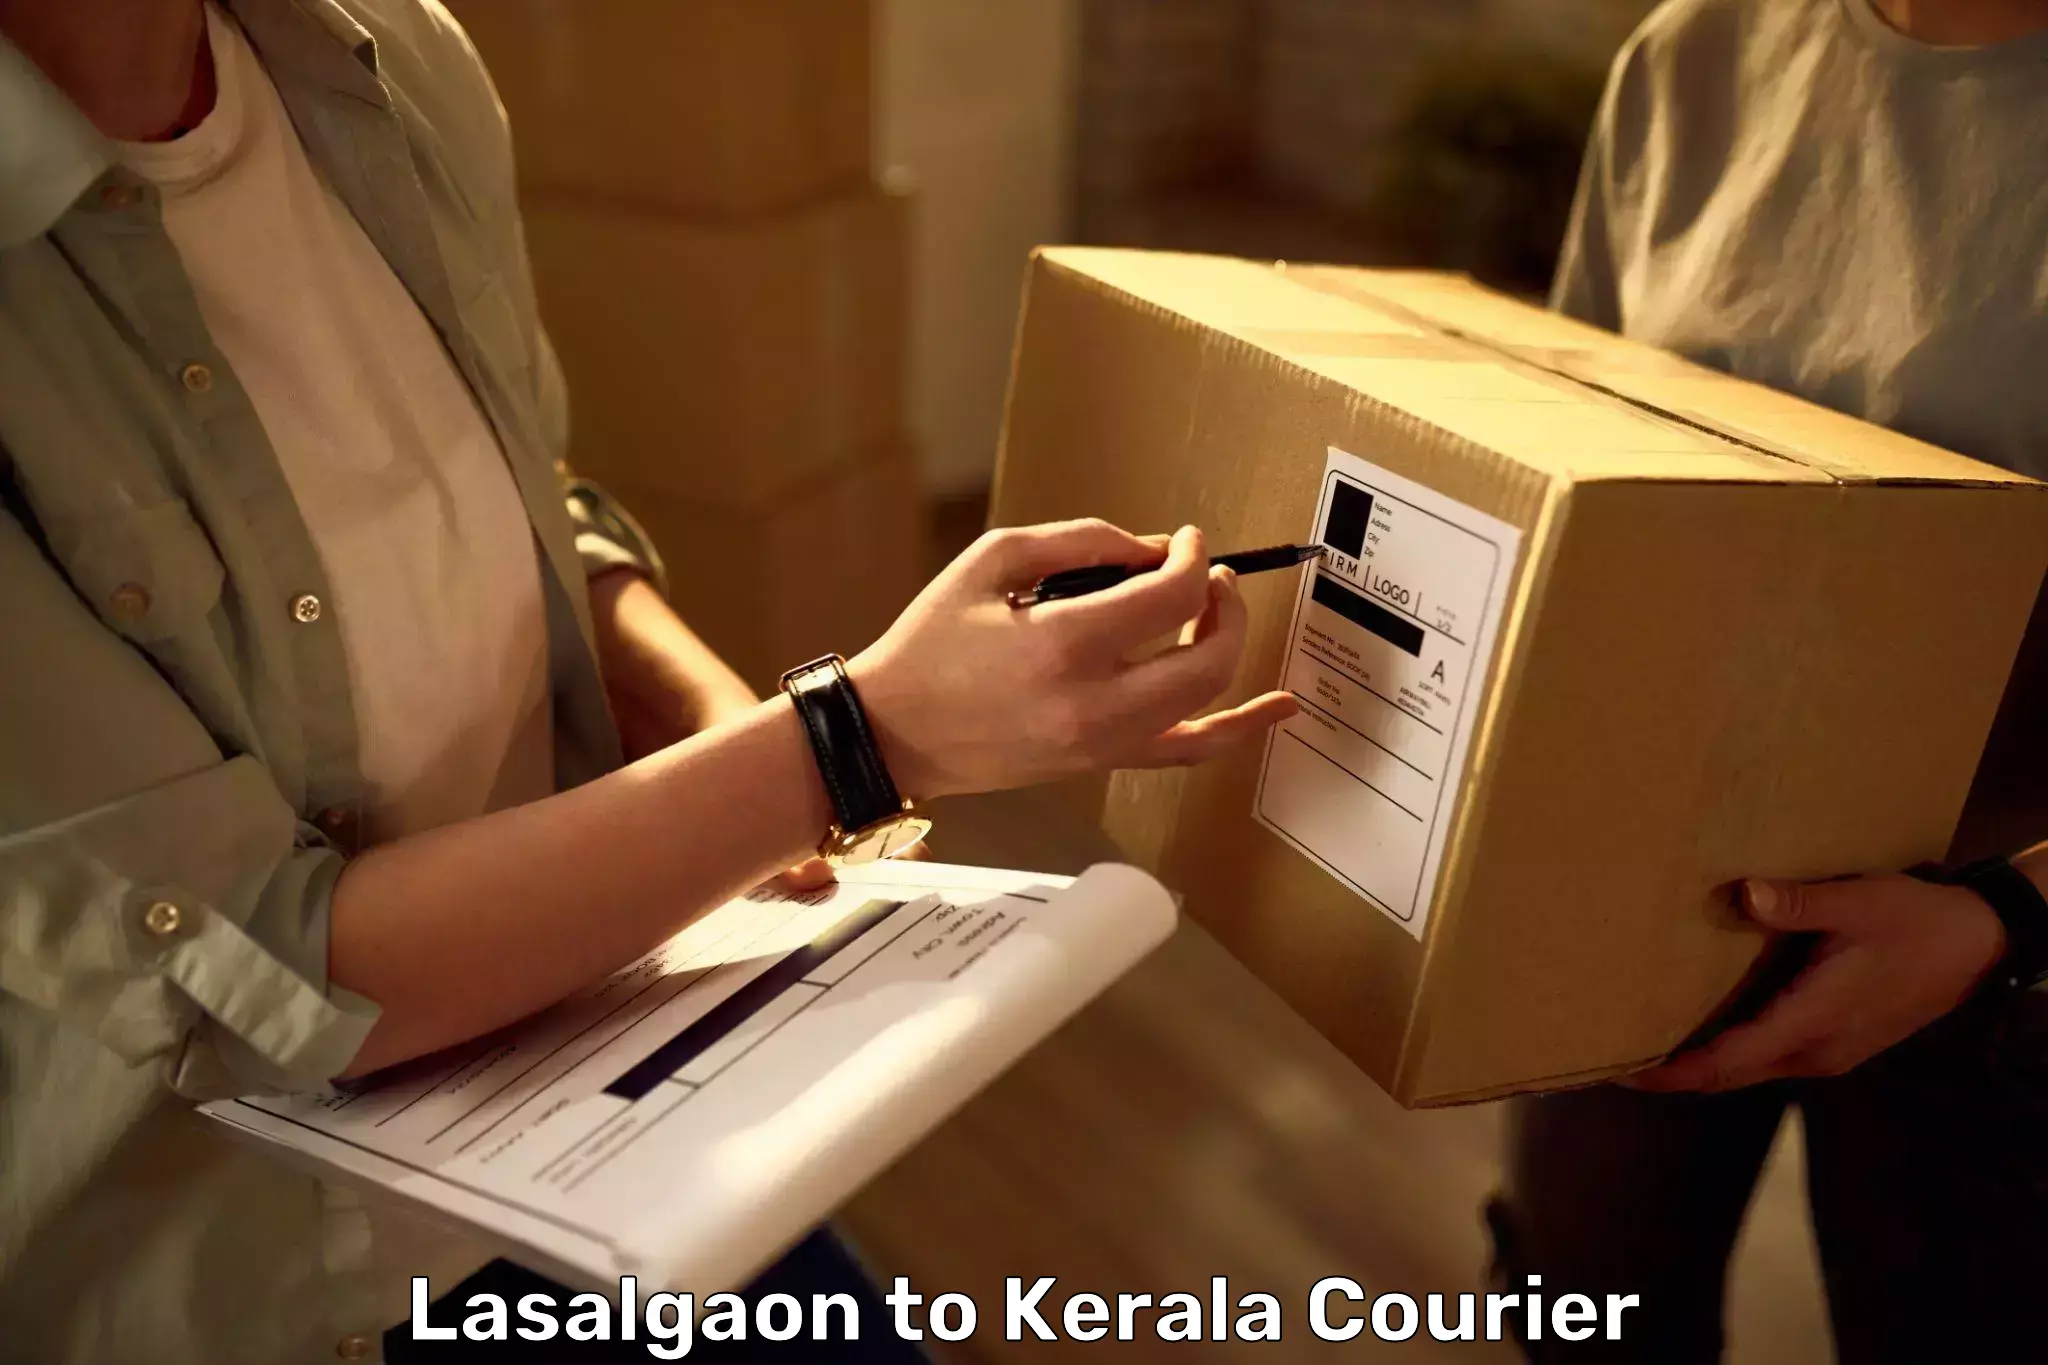 Baggage delivery planning Lasalgaon to Thiruvananthapuram